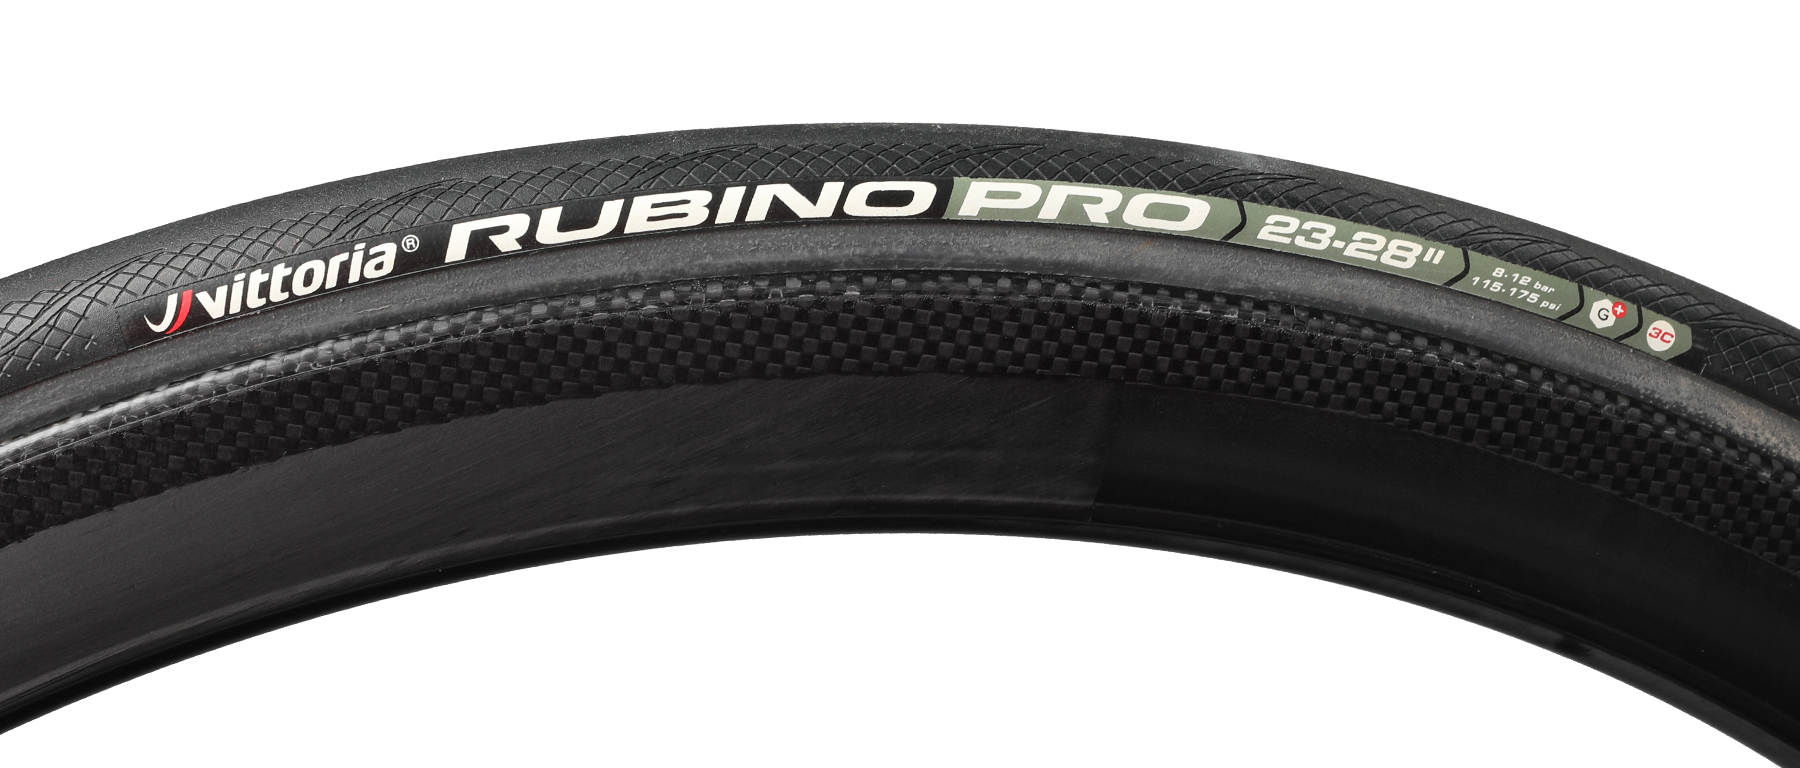 Vittoria Rubino Pro G+ Tubular Road Tire